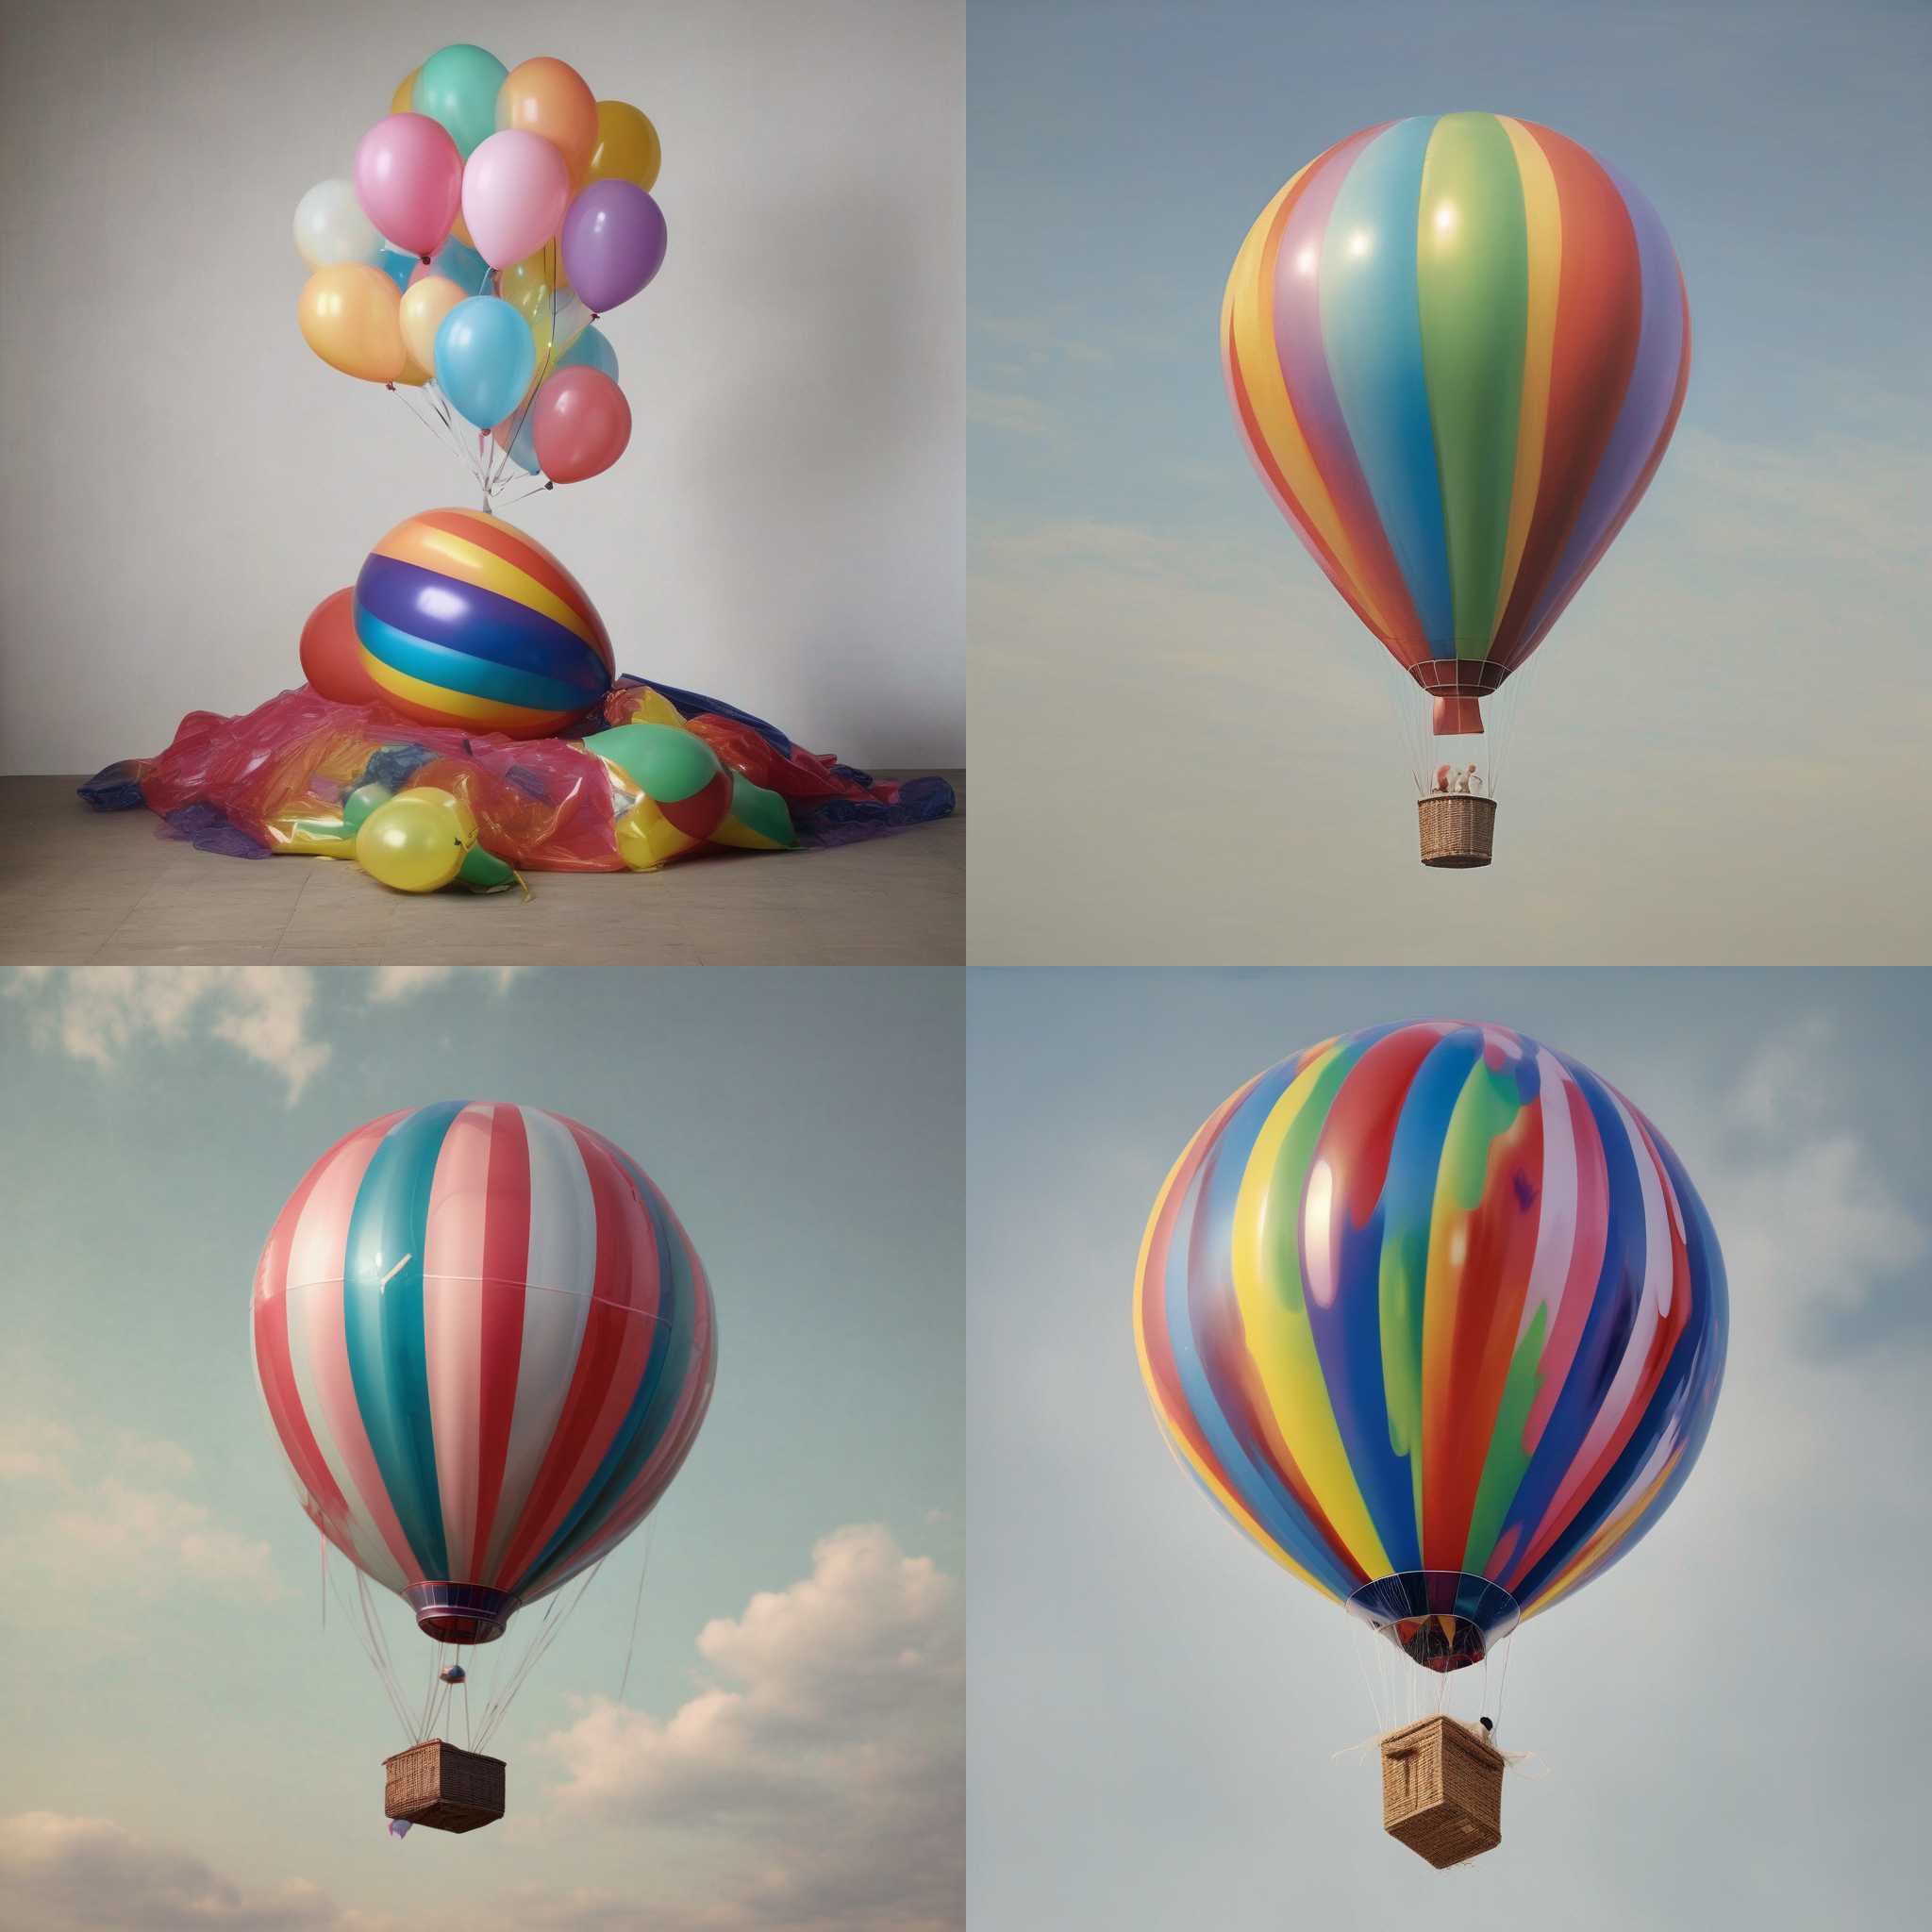 A party balloon